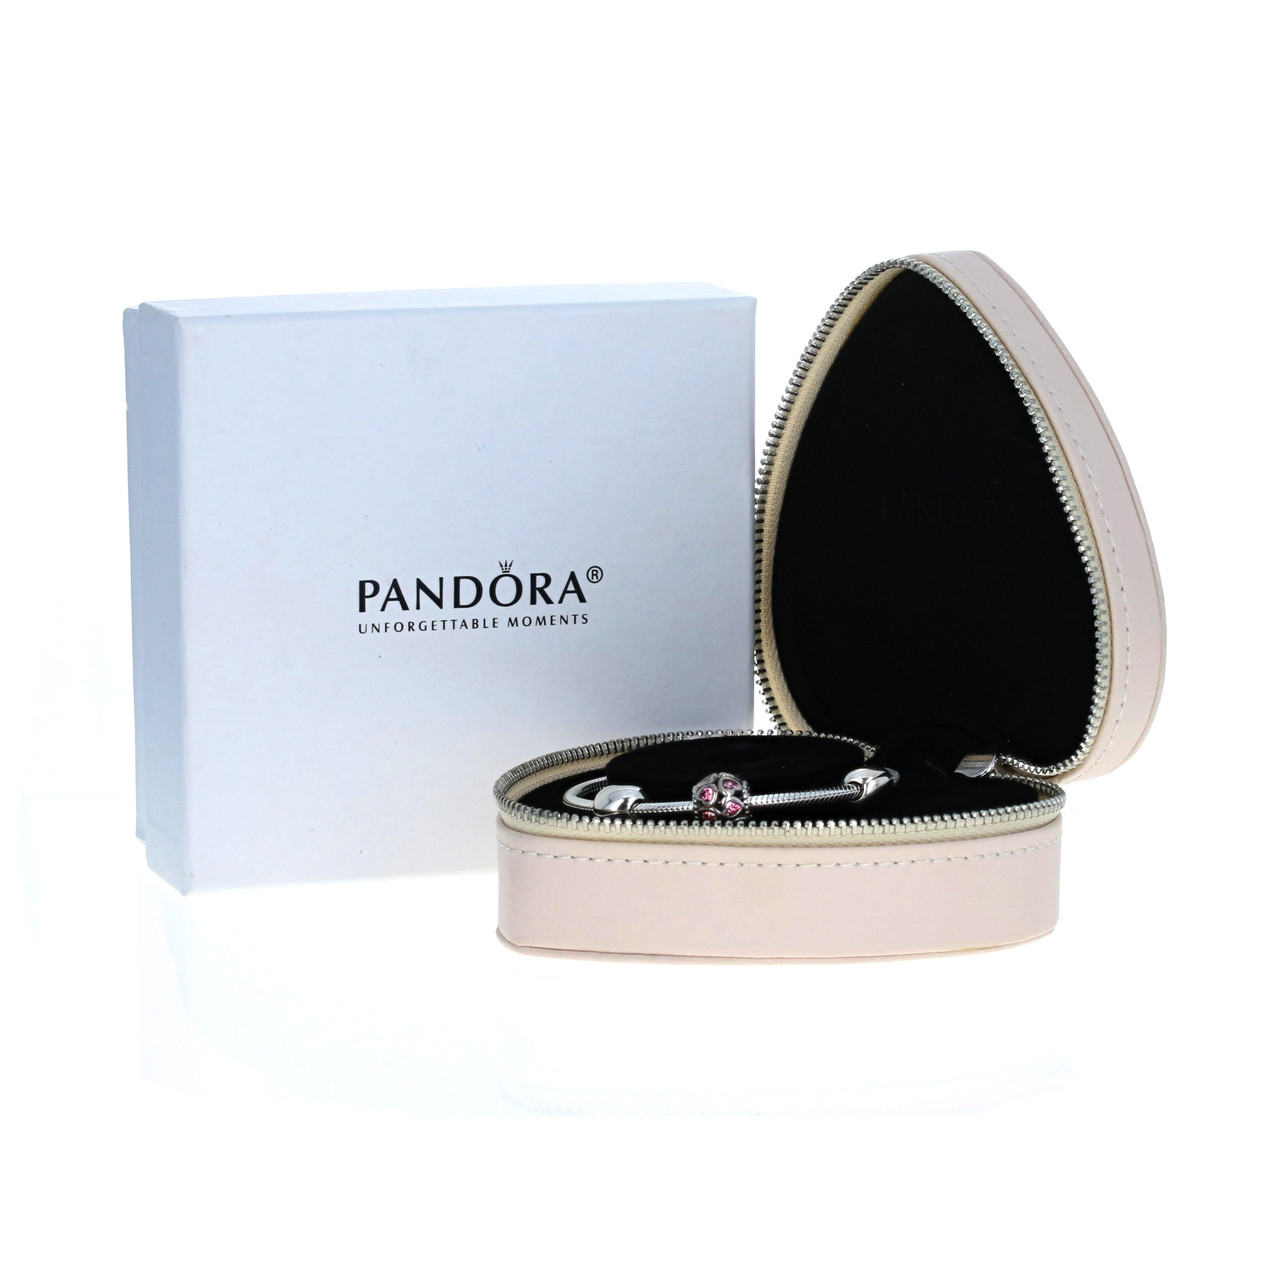 Pandora Bracelets for sale in Richmond, Virginia | Facebook Marketplace |  Facebook